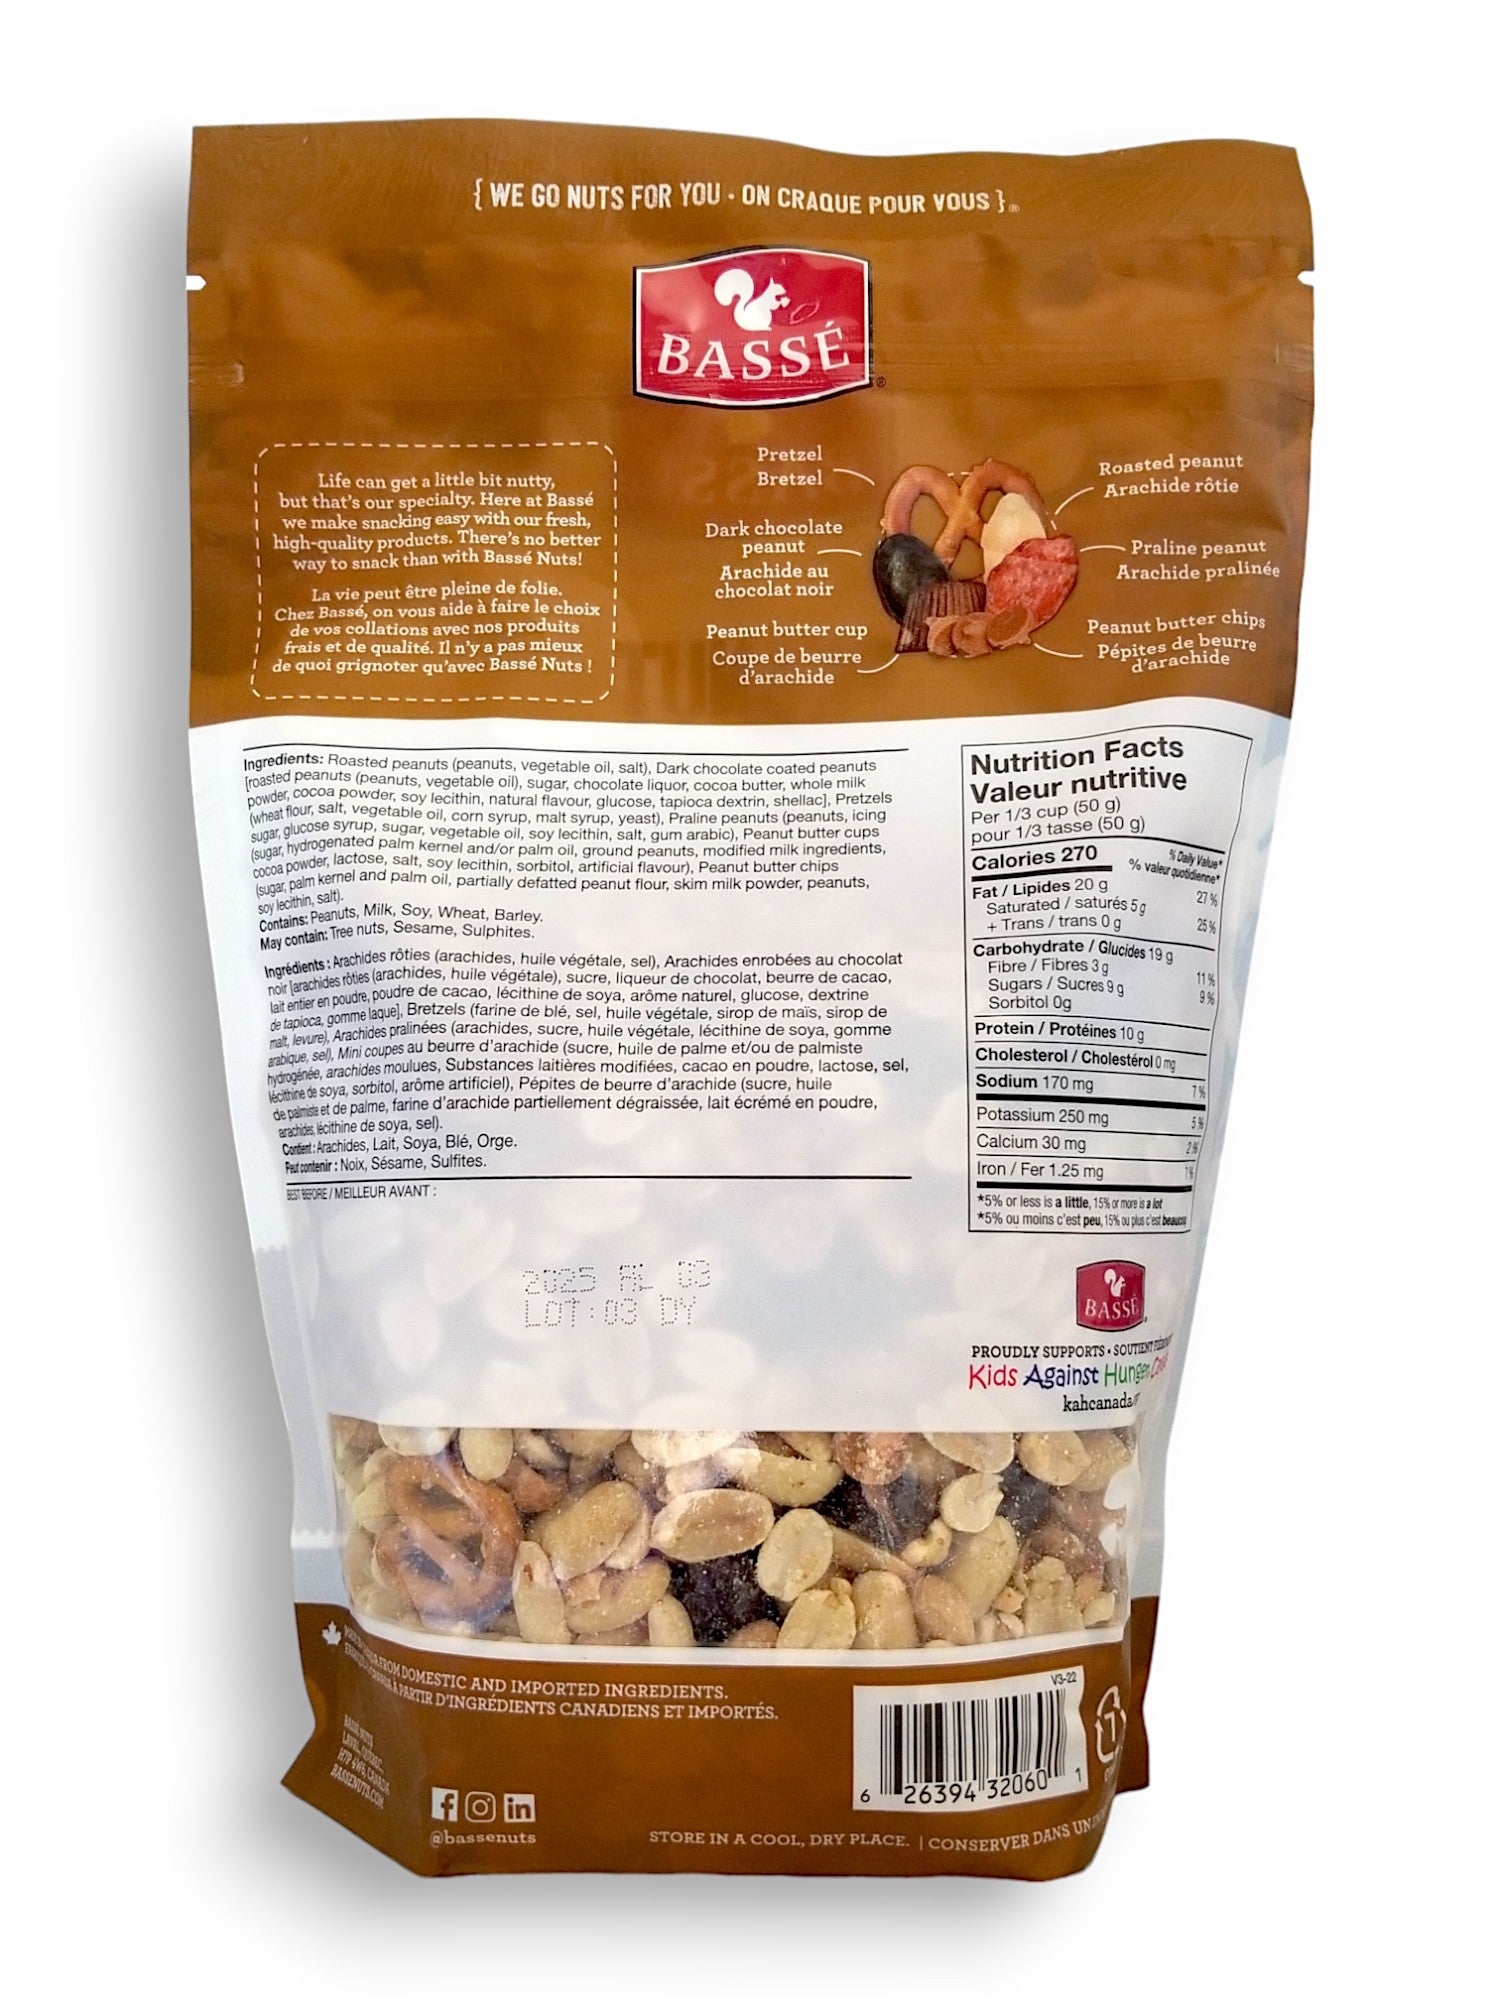 Basse Peanut Lover's Mix 600g, back of bag.